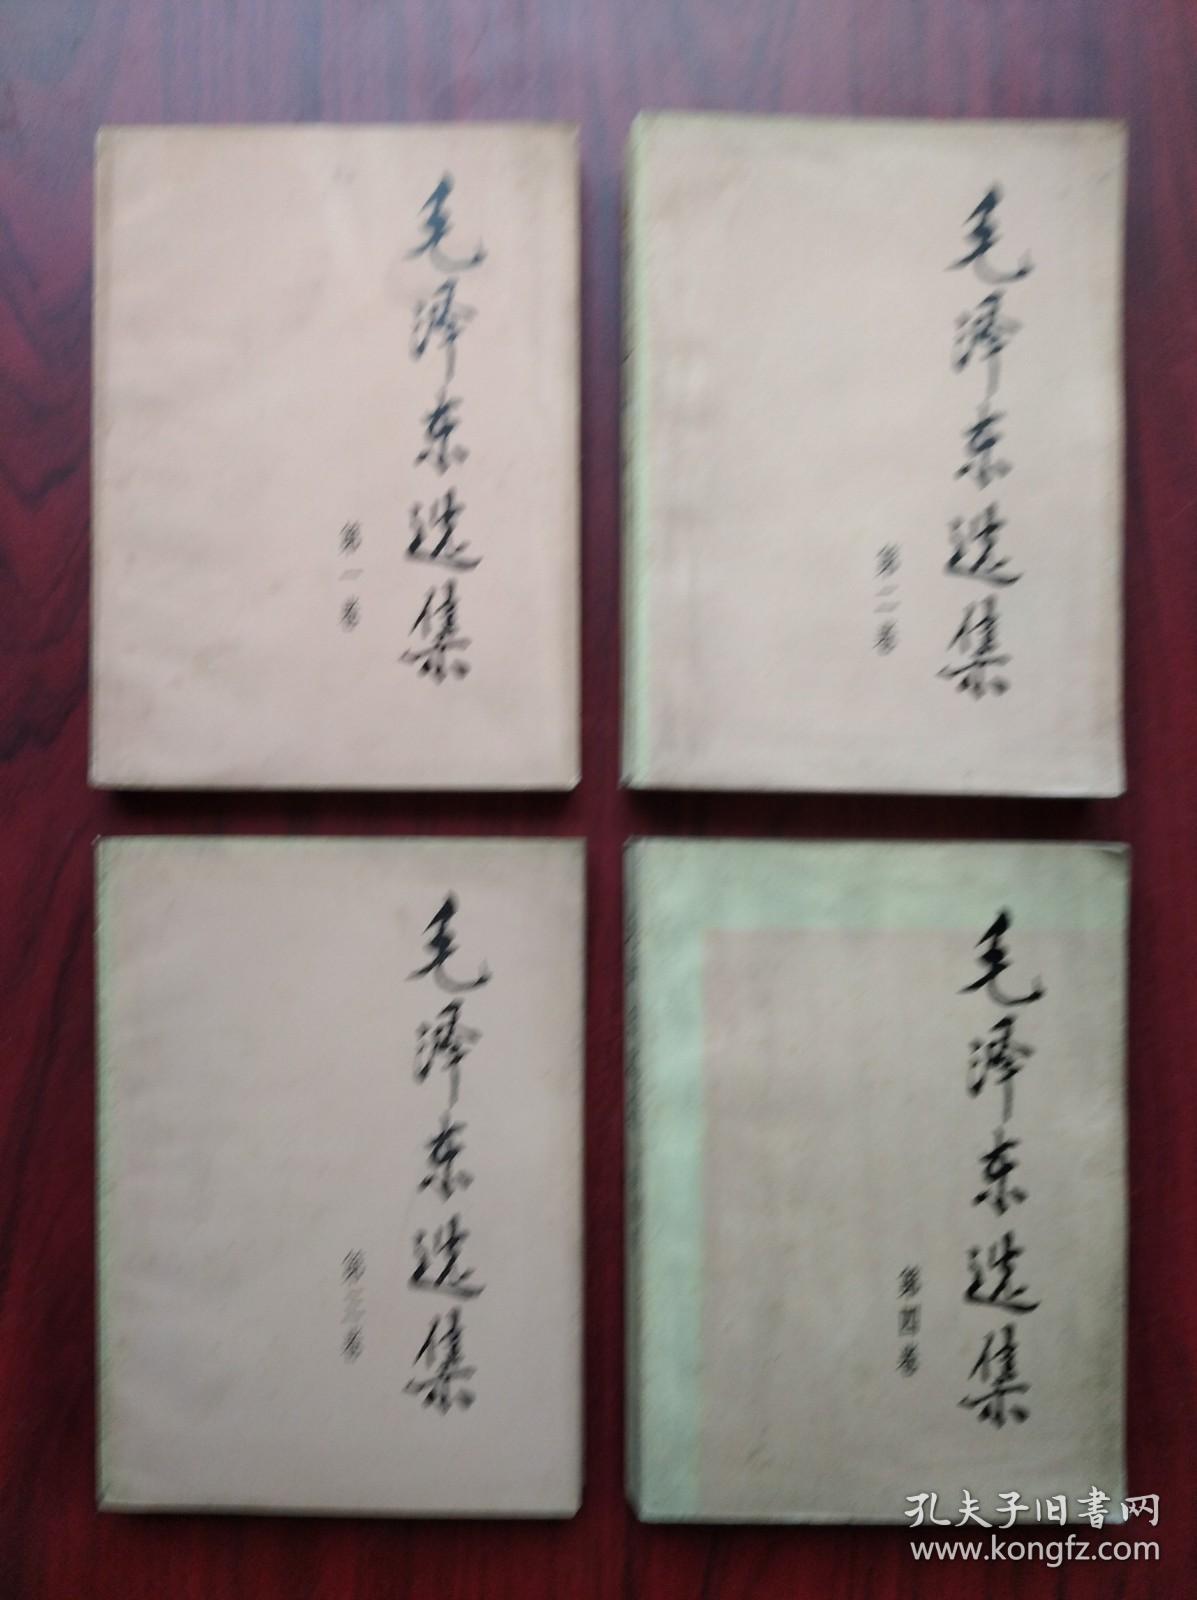 毛泽东选集，全套4本，大字版，(老干部版)第一，二，三，四卷，大32开本，沈阳印，毛泽东